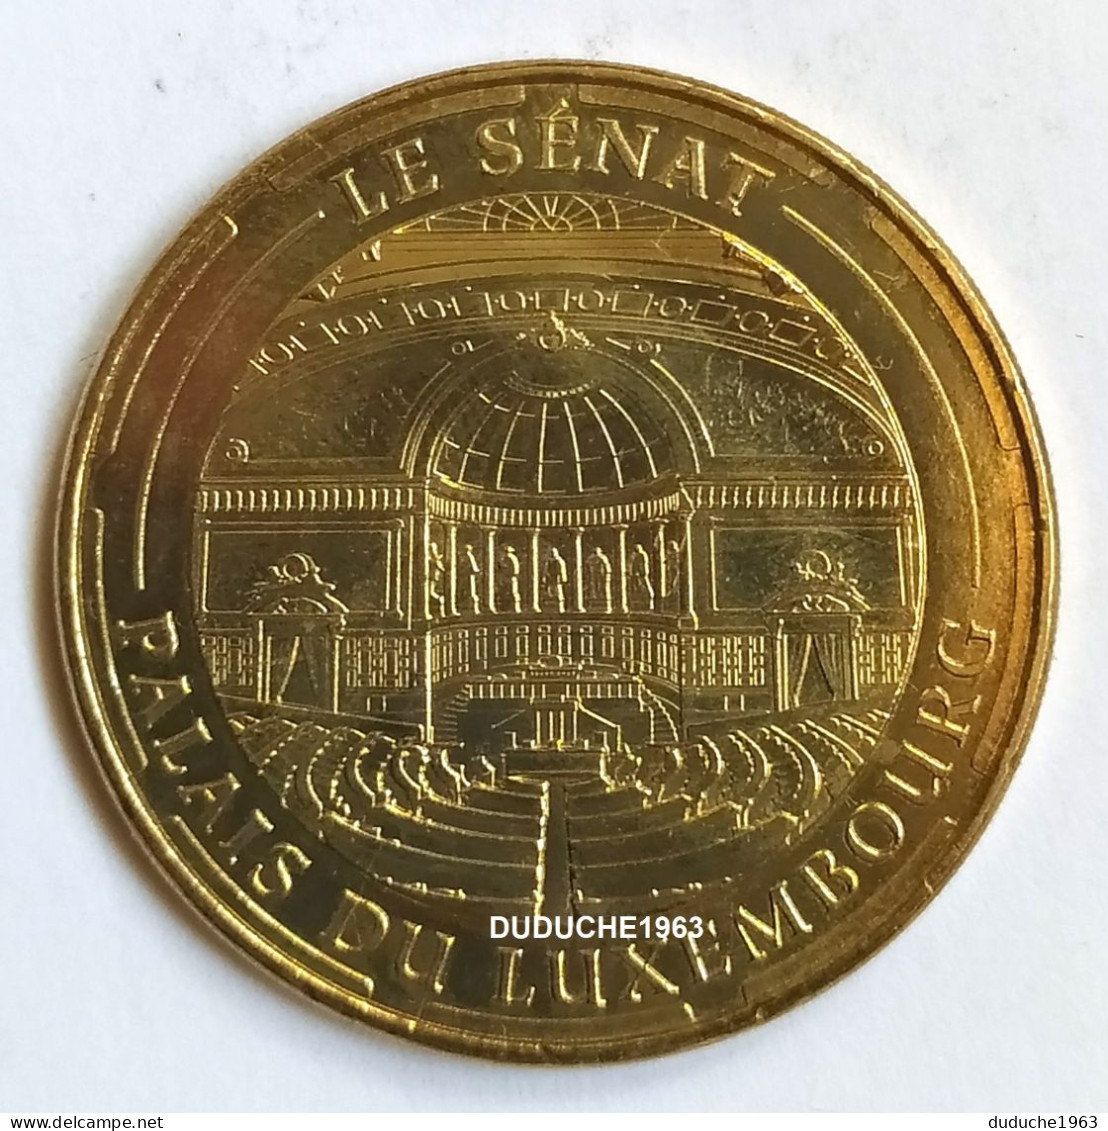 Monnaie De Paris 75.Paris - Palais Du Luxembourg - Le Senat 2014 - 2014